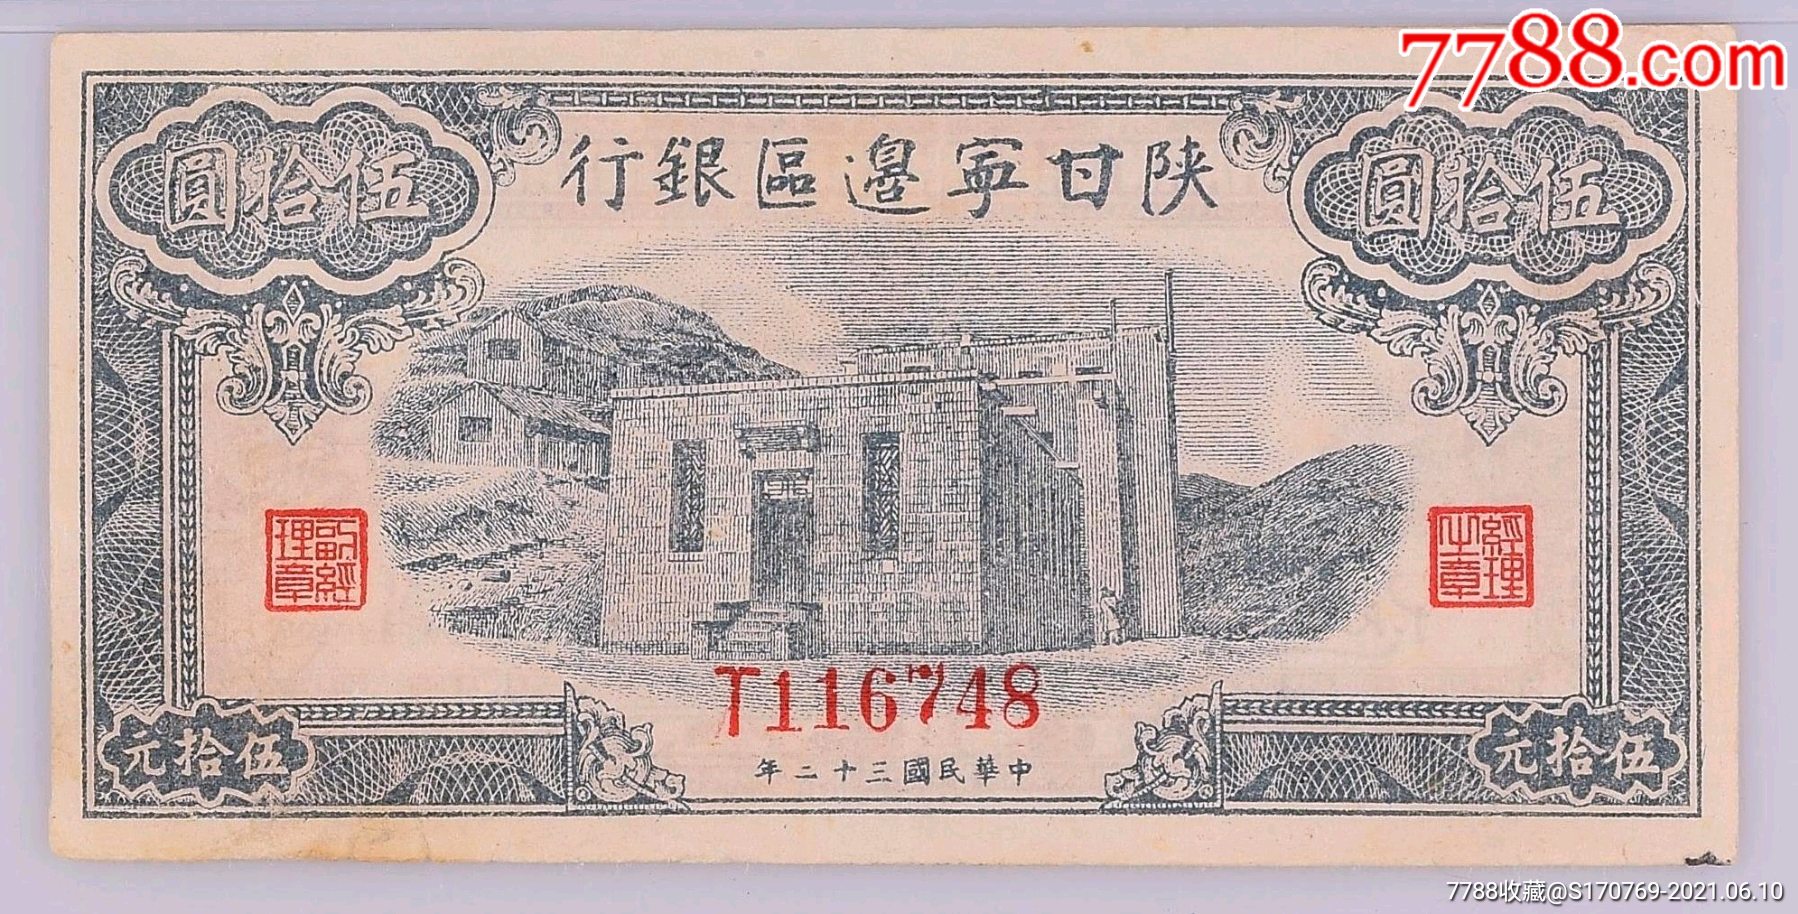 民国三十二年(1943年)陕甘宁边区银行蓝色平房图伍拾圆,九二成新,少见